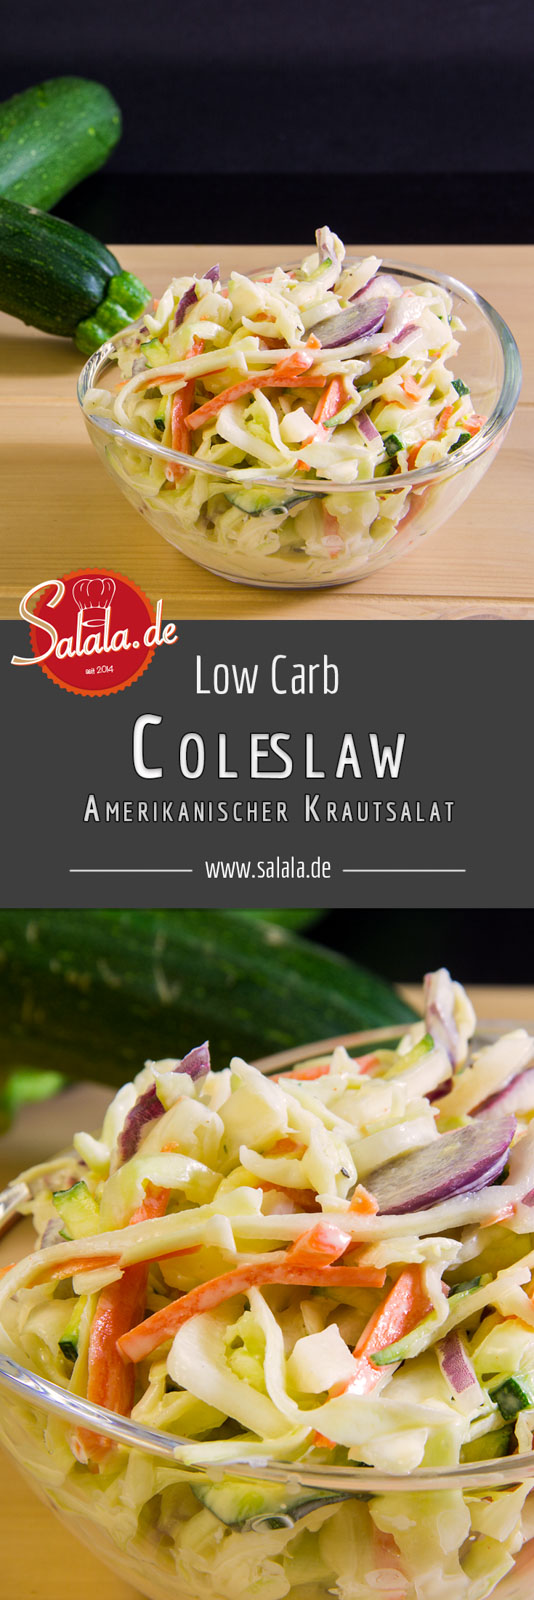 Low Carb Coleslaw – dem Kraut sein Salat Es ist ja eher des Ami's Krautsalat, denn die „Krauts“ sind ja wir. Anyway, wir haben den Low Carb Krautsalat für dich jetzt verfilmt. Wir haben uns ja bekanntermaßen zur Aufgabe gemacht alle unsere Rezepte in zum Bewegtbild zu formen.